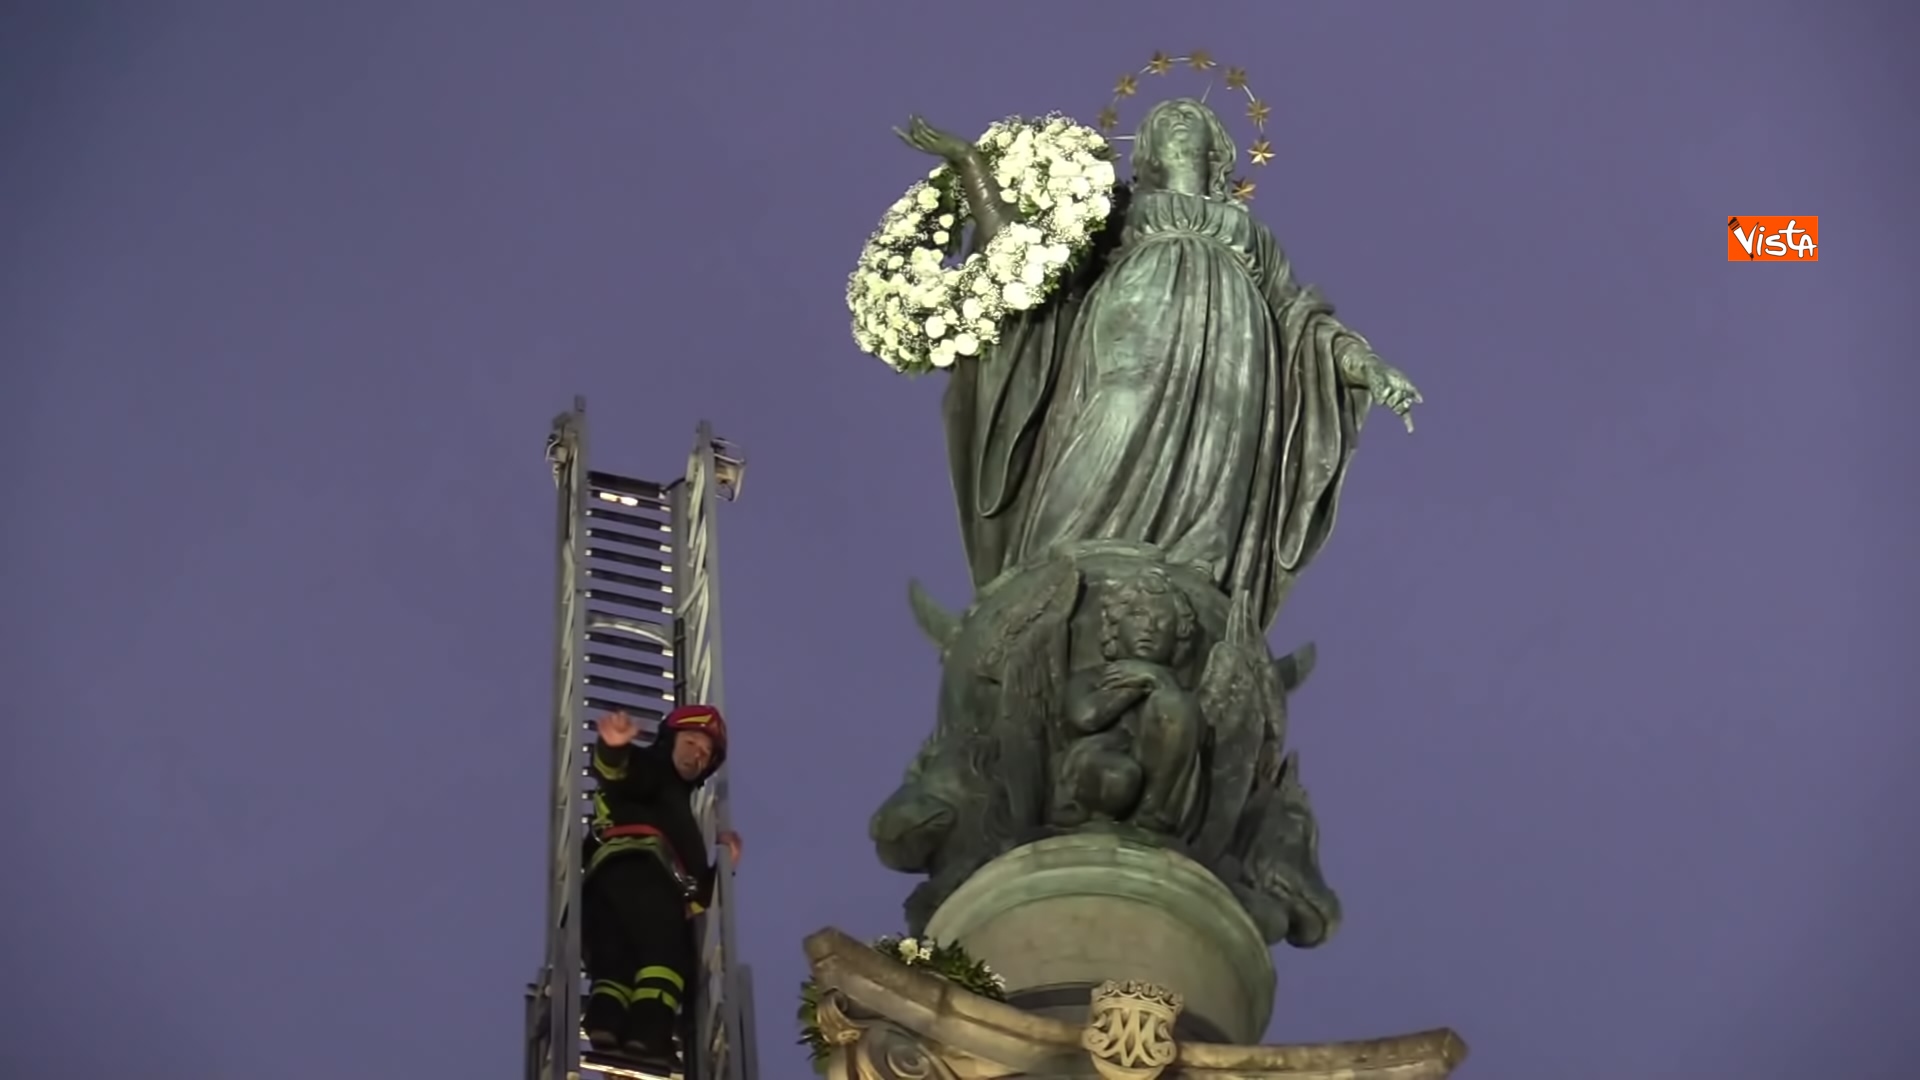 08-12-21 Immacolata i Vigili del Fuoco depongono le corone di fiori in cima alla colonna di Piazza di Spagna 01_4510708020477441429560